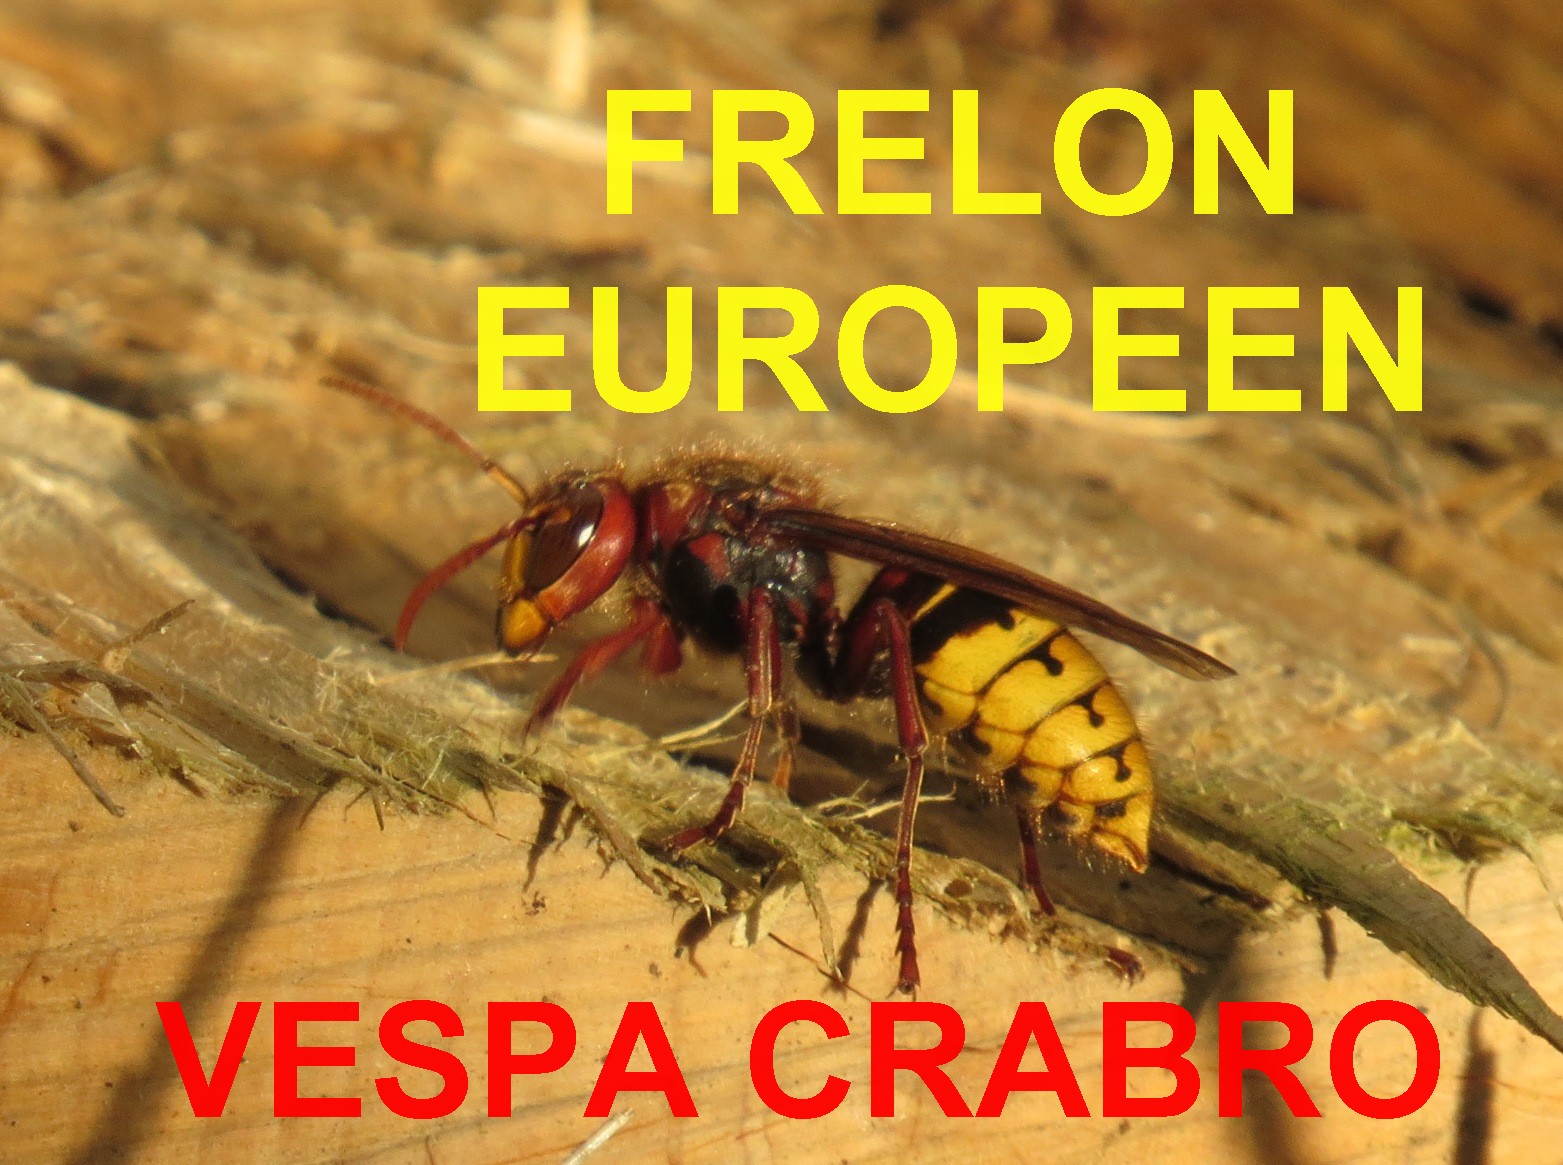 Vespa crabro, le frelon de Bretagne breton